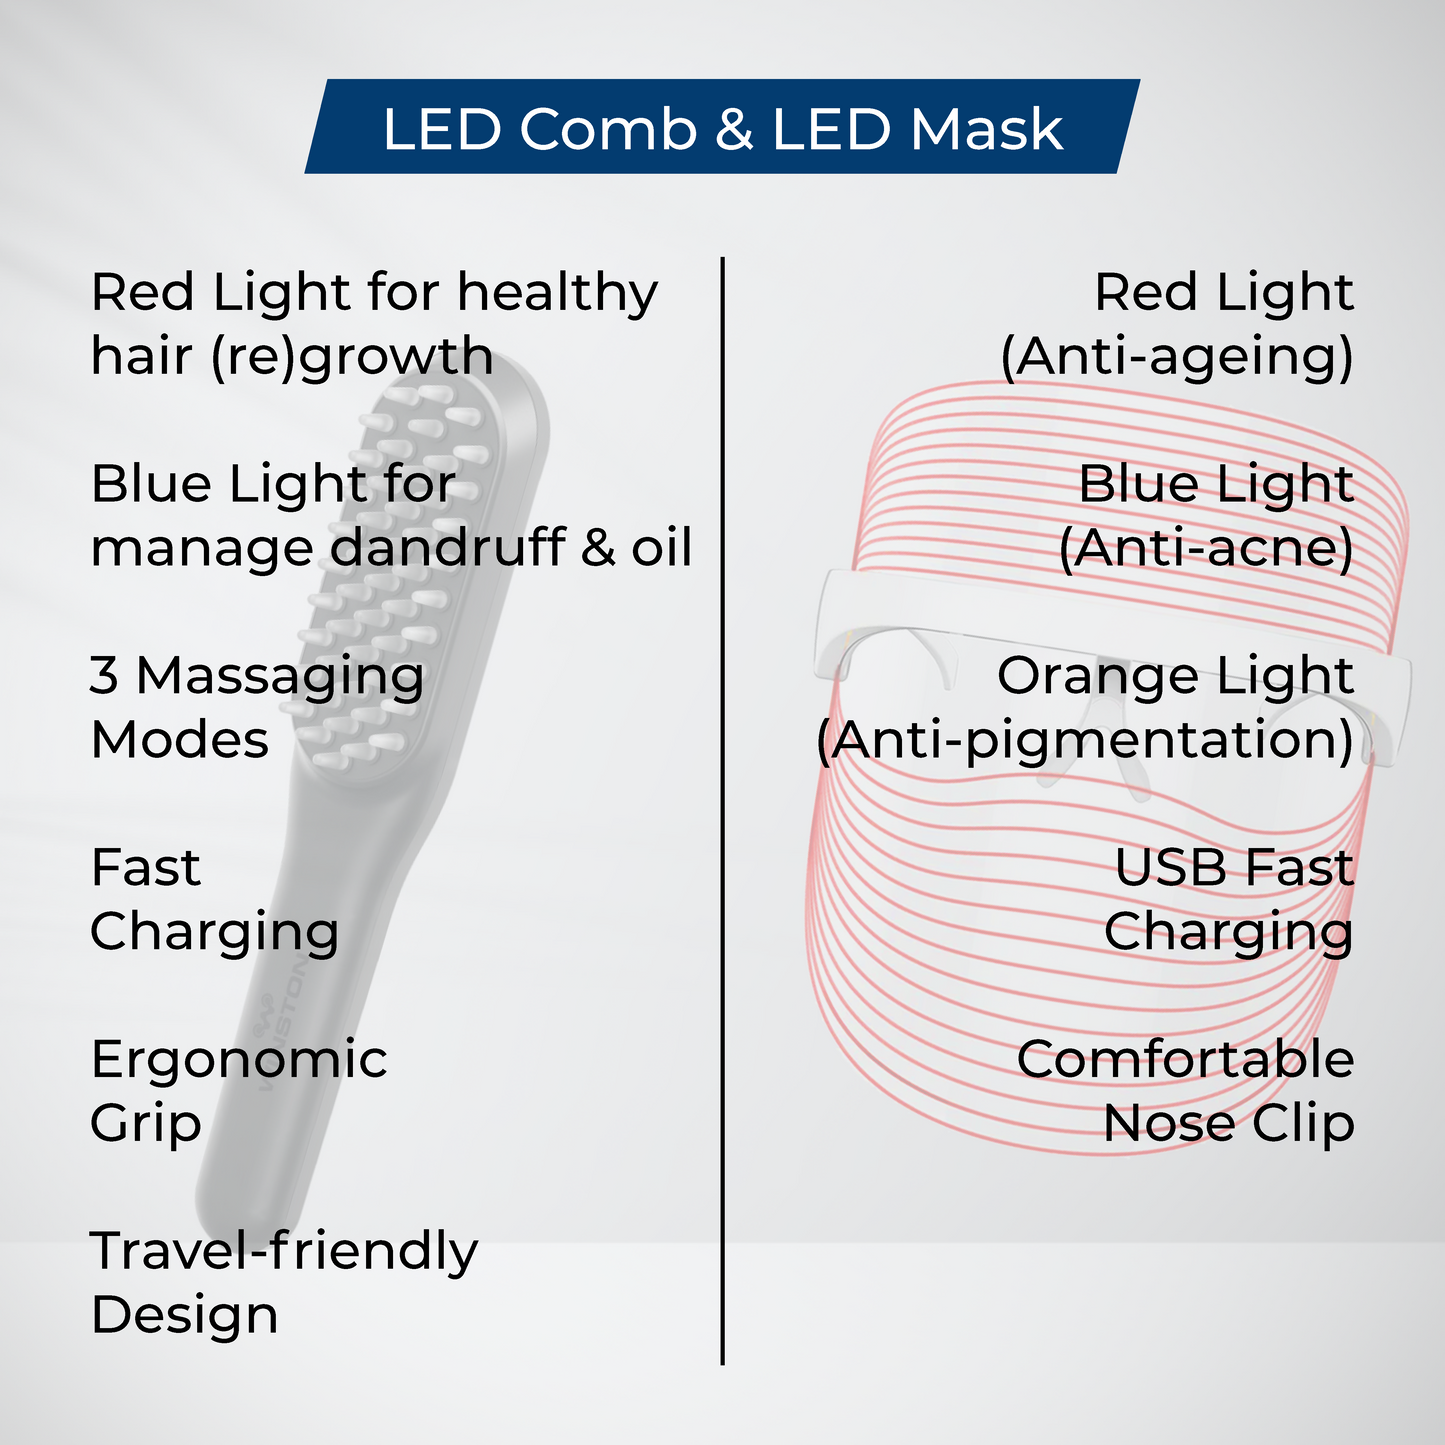 LED Comb & LED Mask Combo